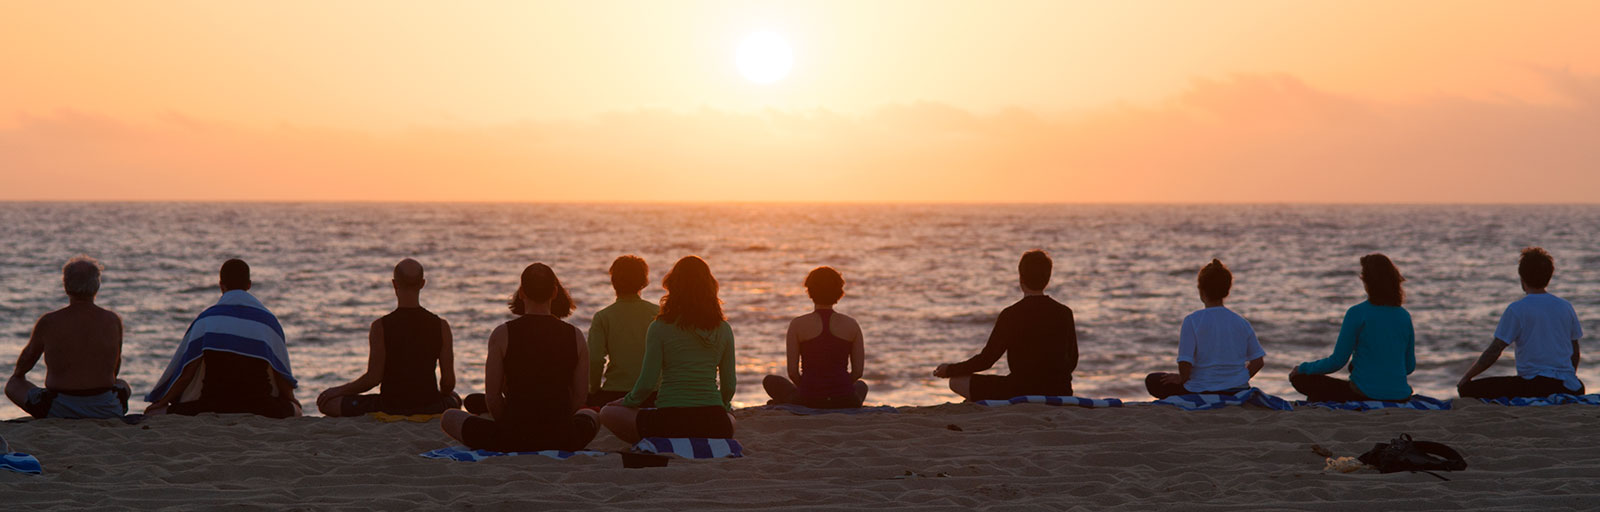 Mexico Yoga Retreats: Beach Meditation at Sunset